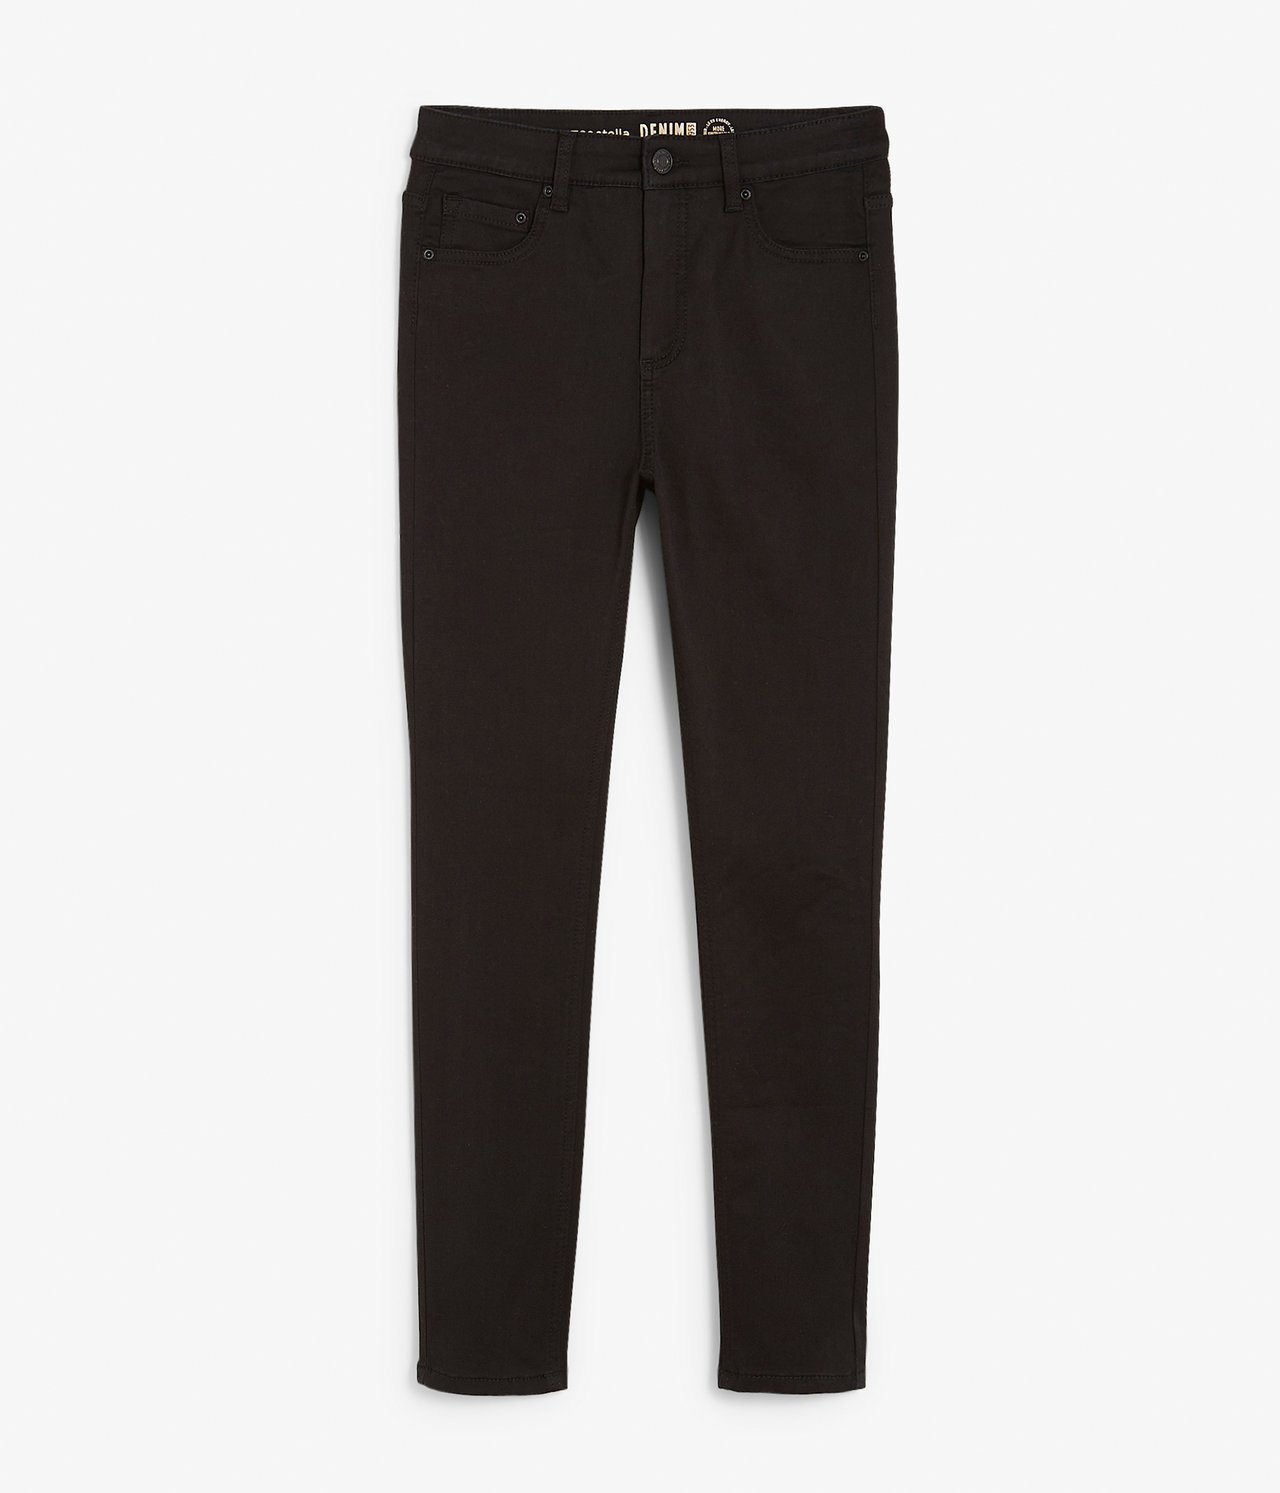 Super slim jeans short leg - Musta - 5